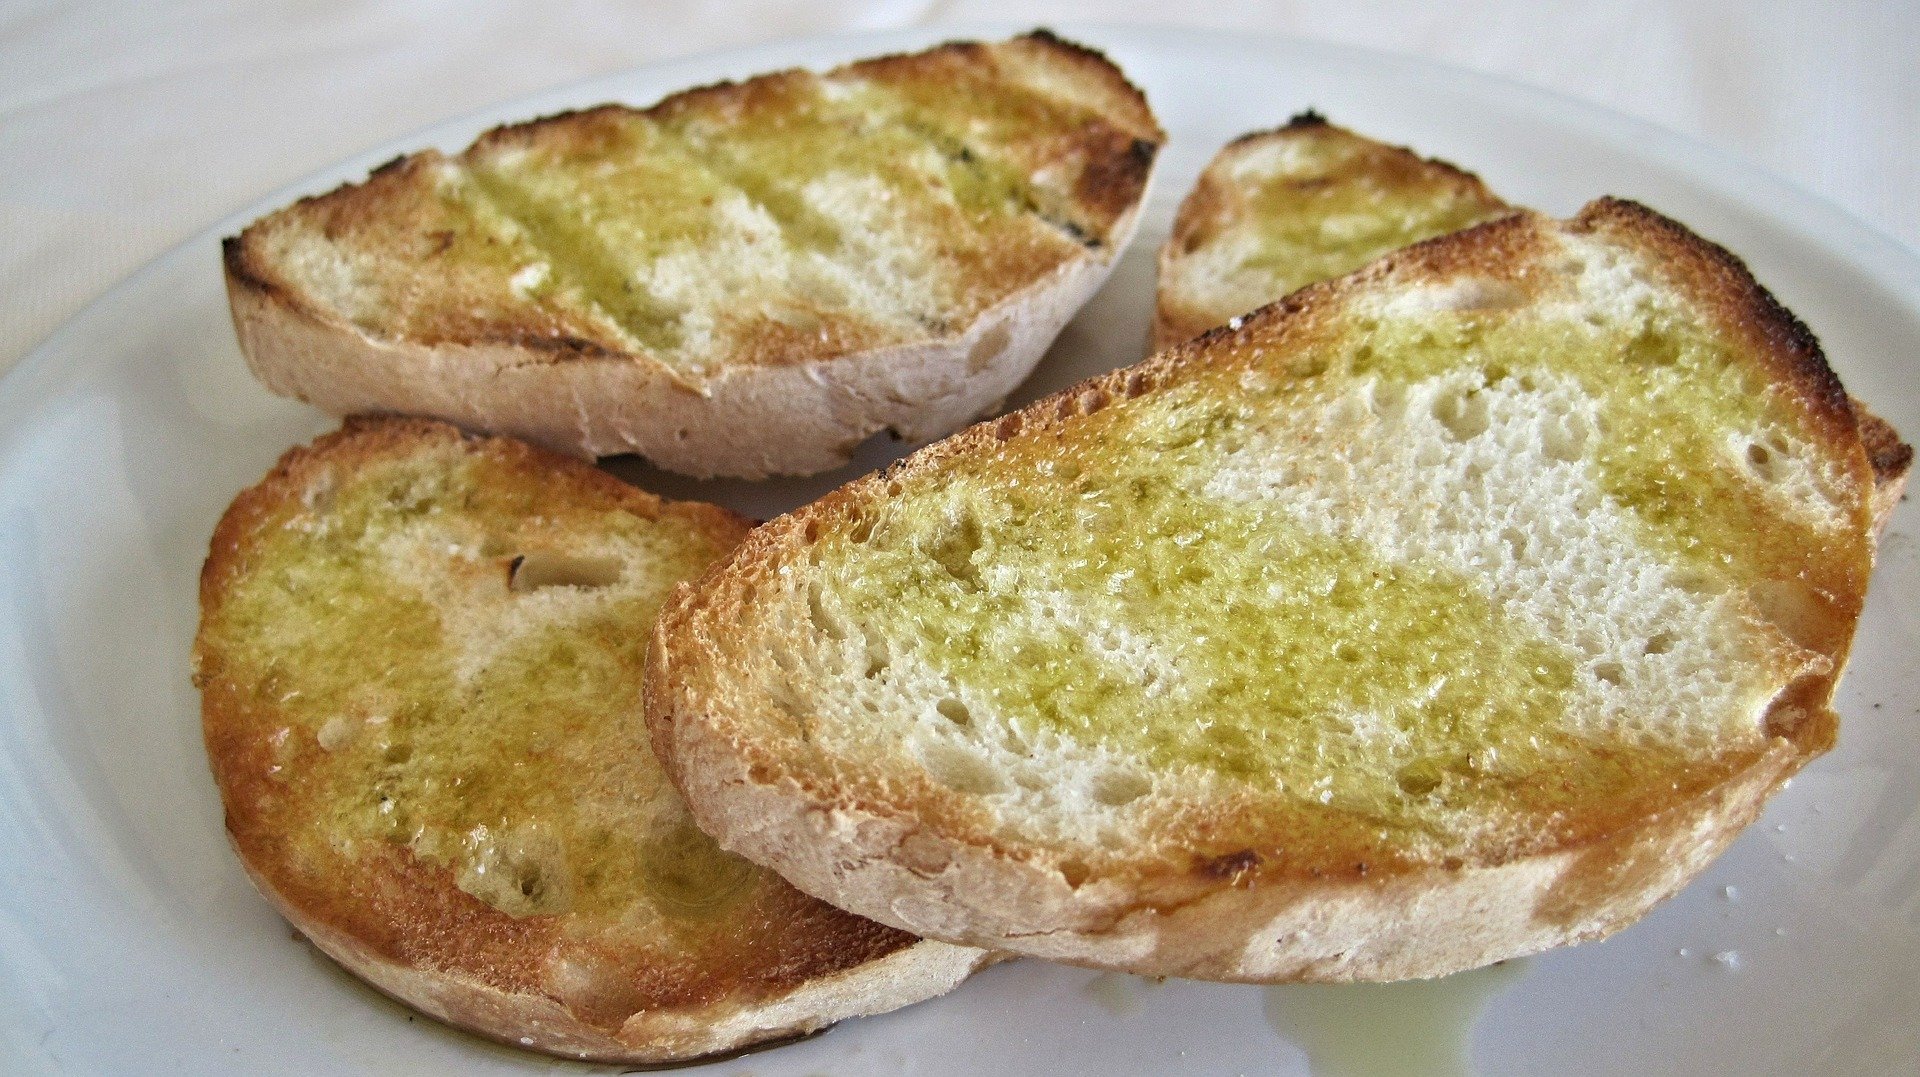 klasyka - opieczony chleb, potarty czosnkiem i polany oliwa z oliwek